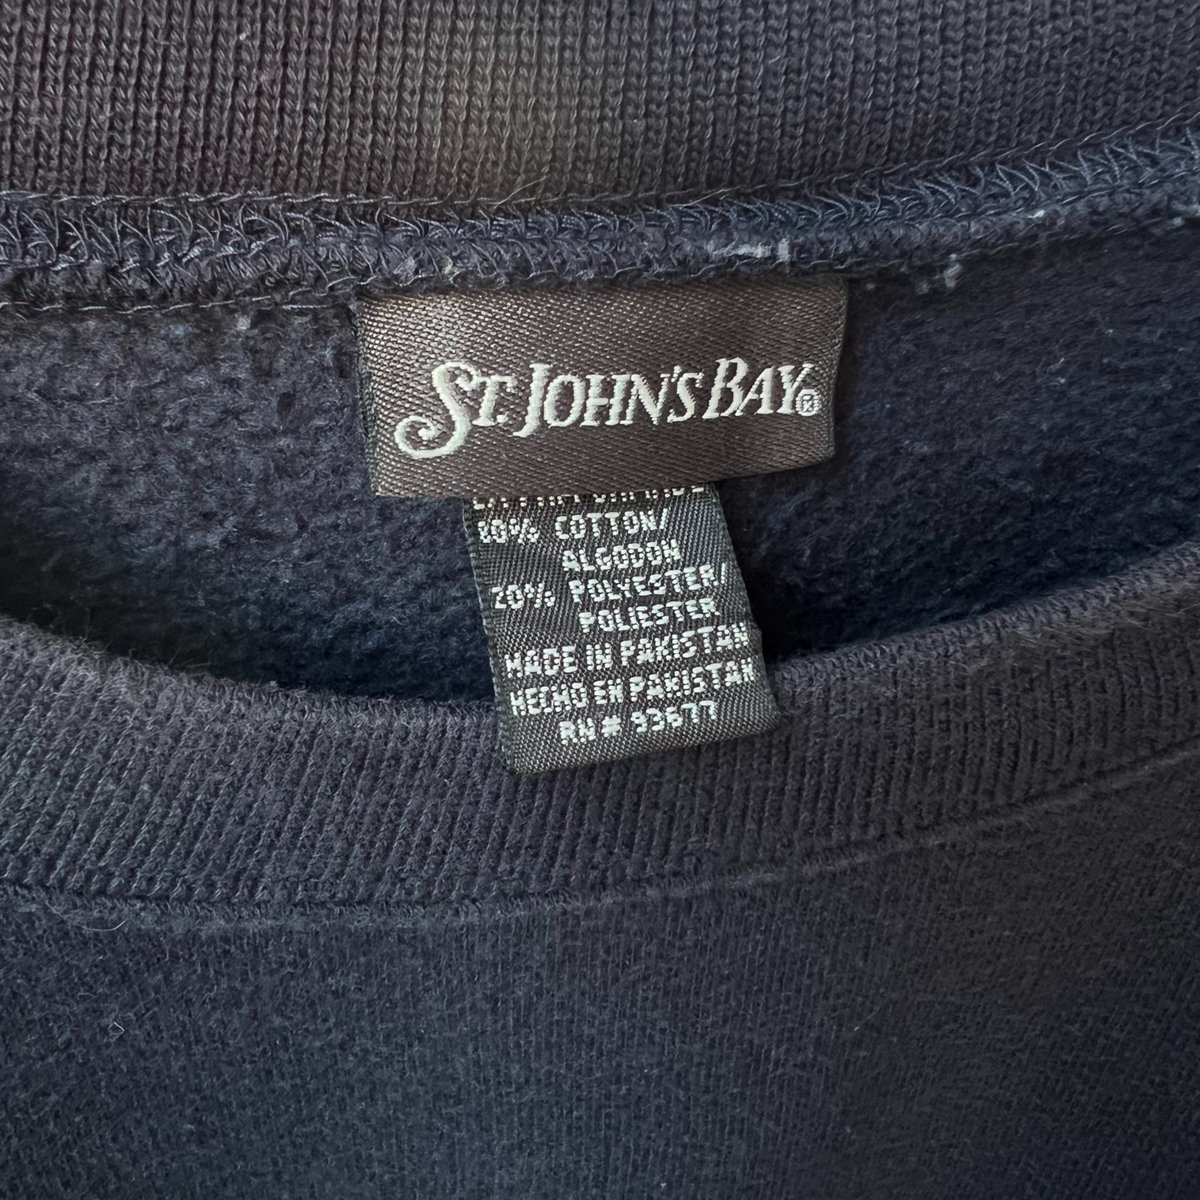 🦊🦊🦊
size XL
¥6,050-
ジョンズベイ、無地、ネイビーです💁‍♀️
#stjohnsbay 
#セントジョンズベイ
#FBTSHOP
#学芸大学